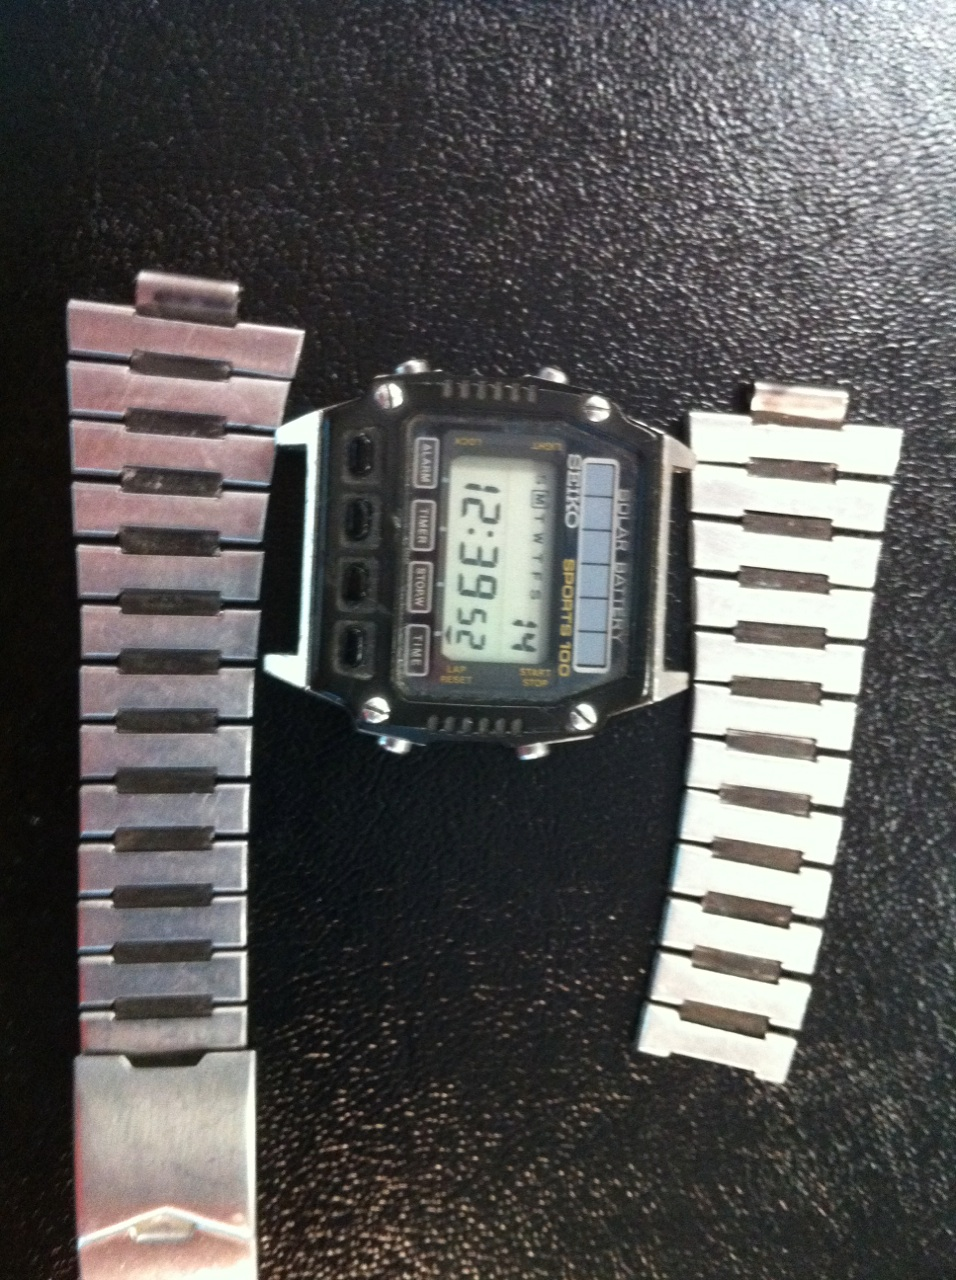 WTB : Original Seiko Bracelet for A557-5060 | The Watch Site